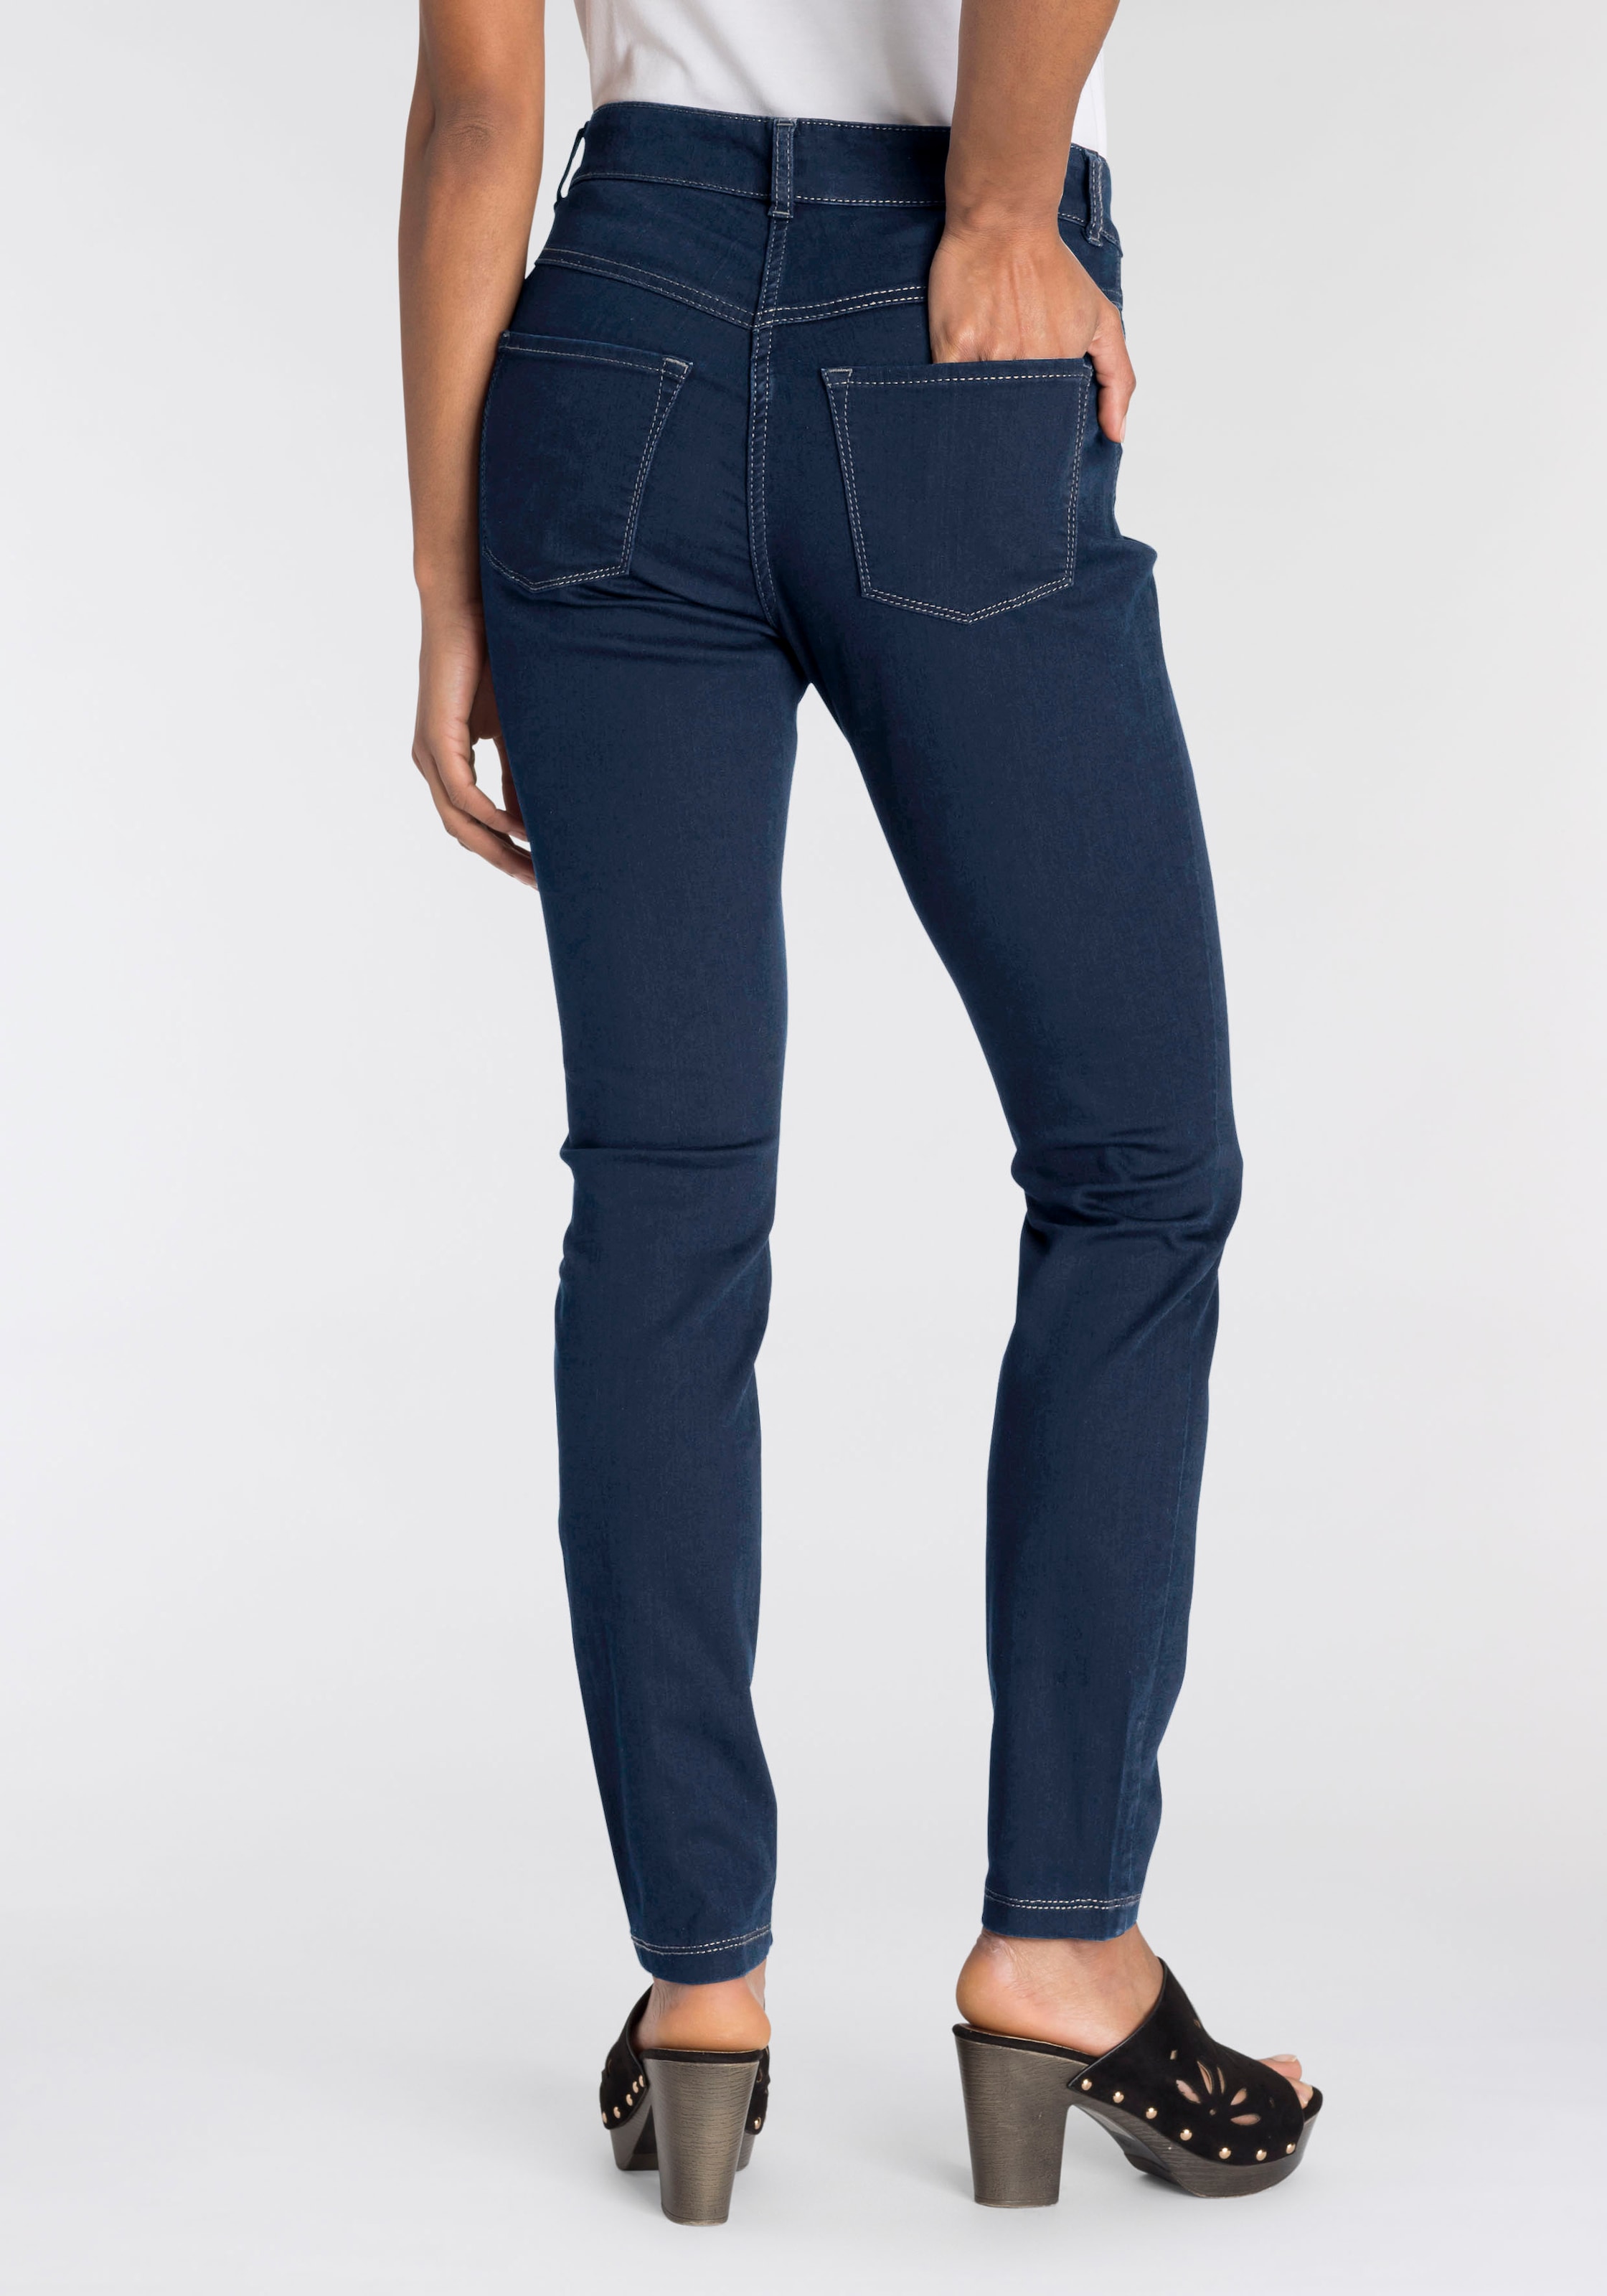 bequem Qualität »Hiperstretch-Skinny«, Tag bei den OTTOversand sitzt ganzen MAC Power-Stretch Skinny-fit-Jeans